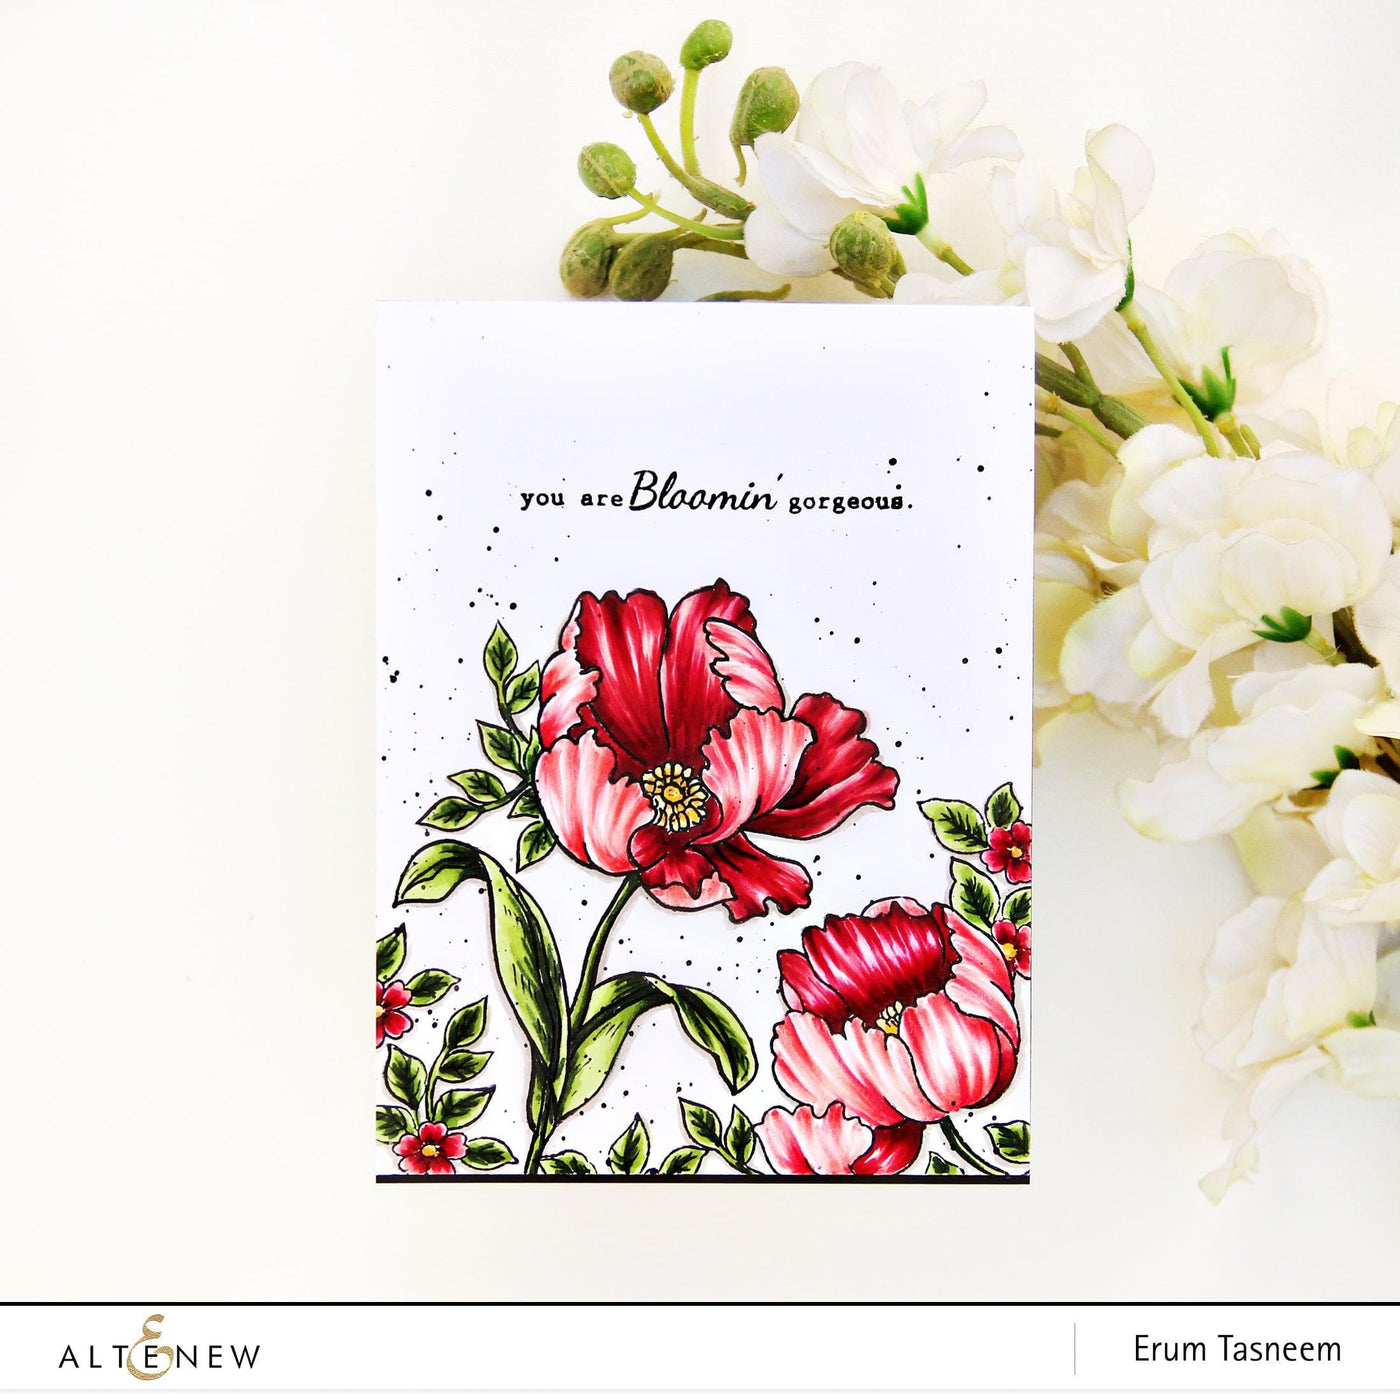 Altenew Build-A-Flower Set Build-A-Flower: Poppy Layering Stamp & Die Set